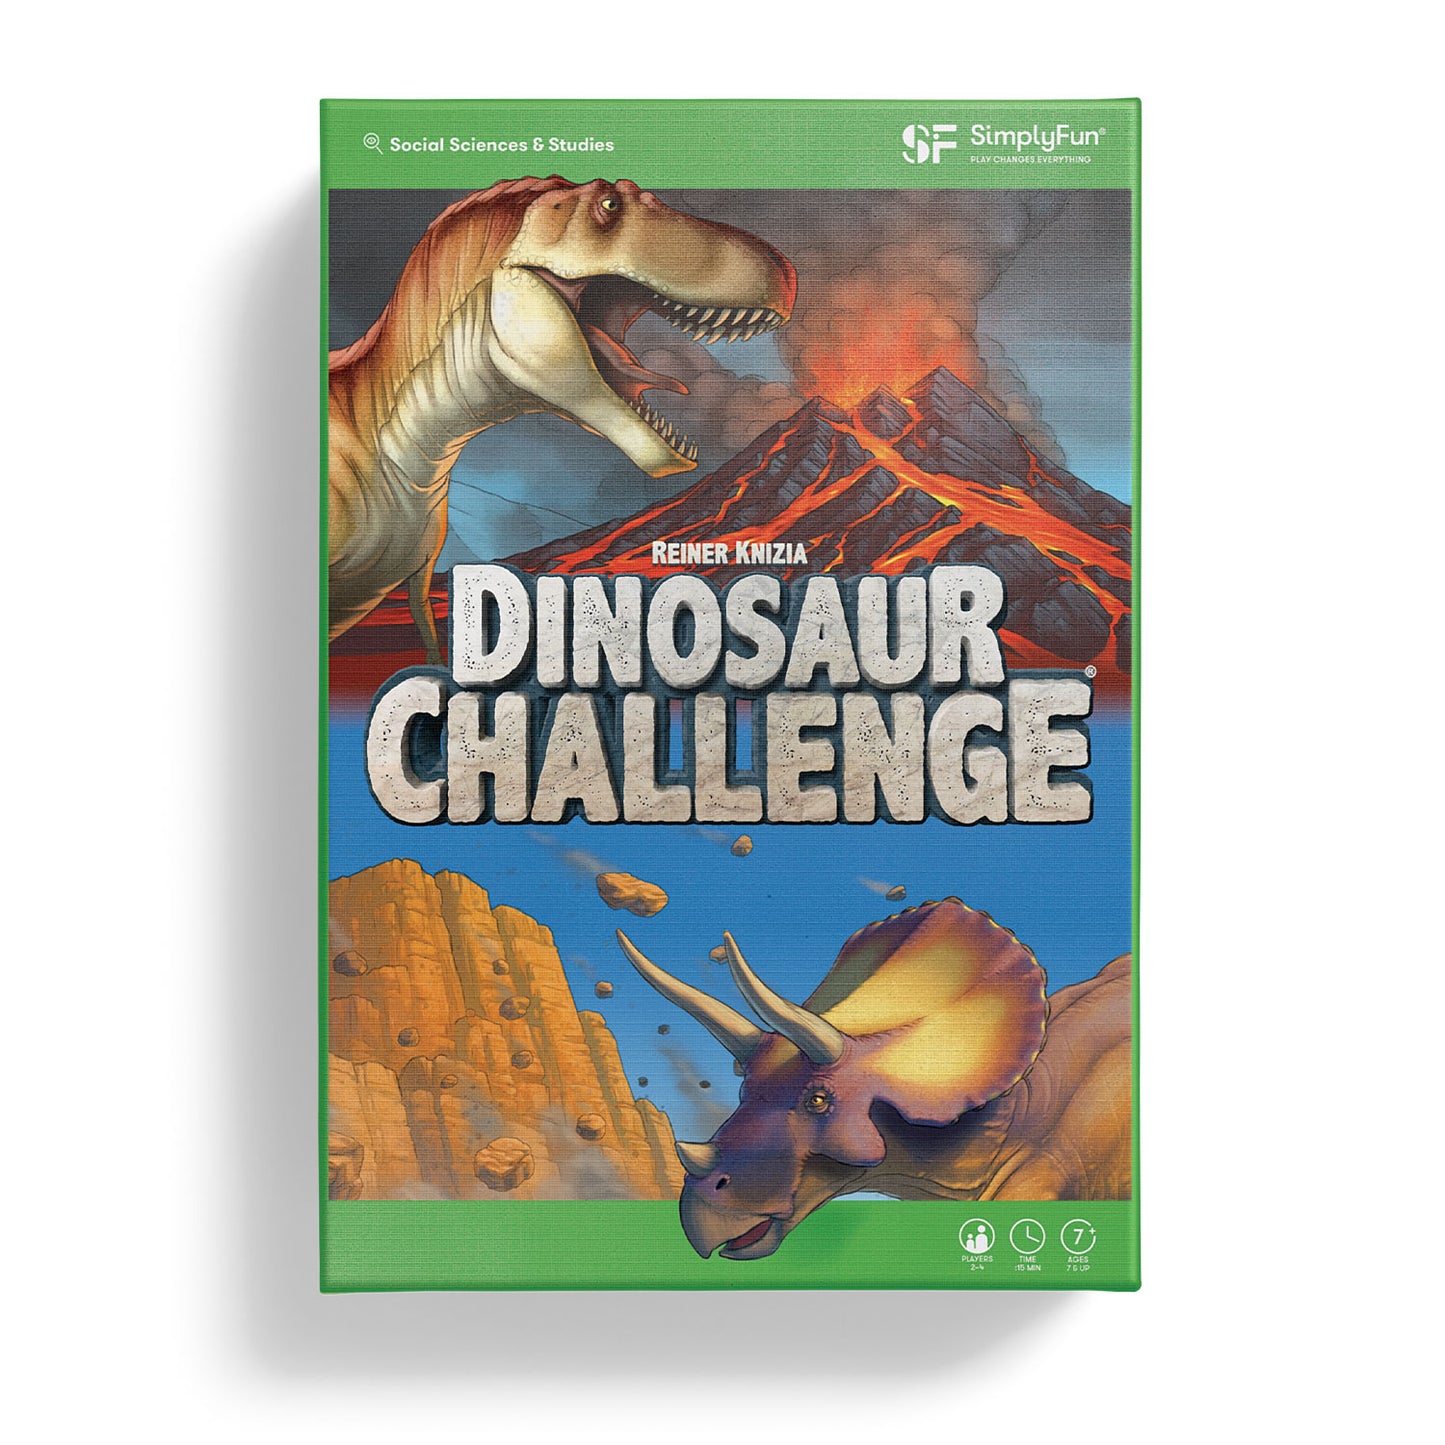 Dinosaur Games by Dinofun